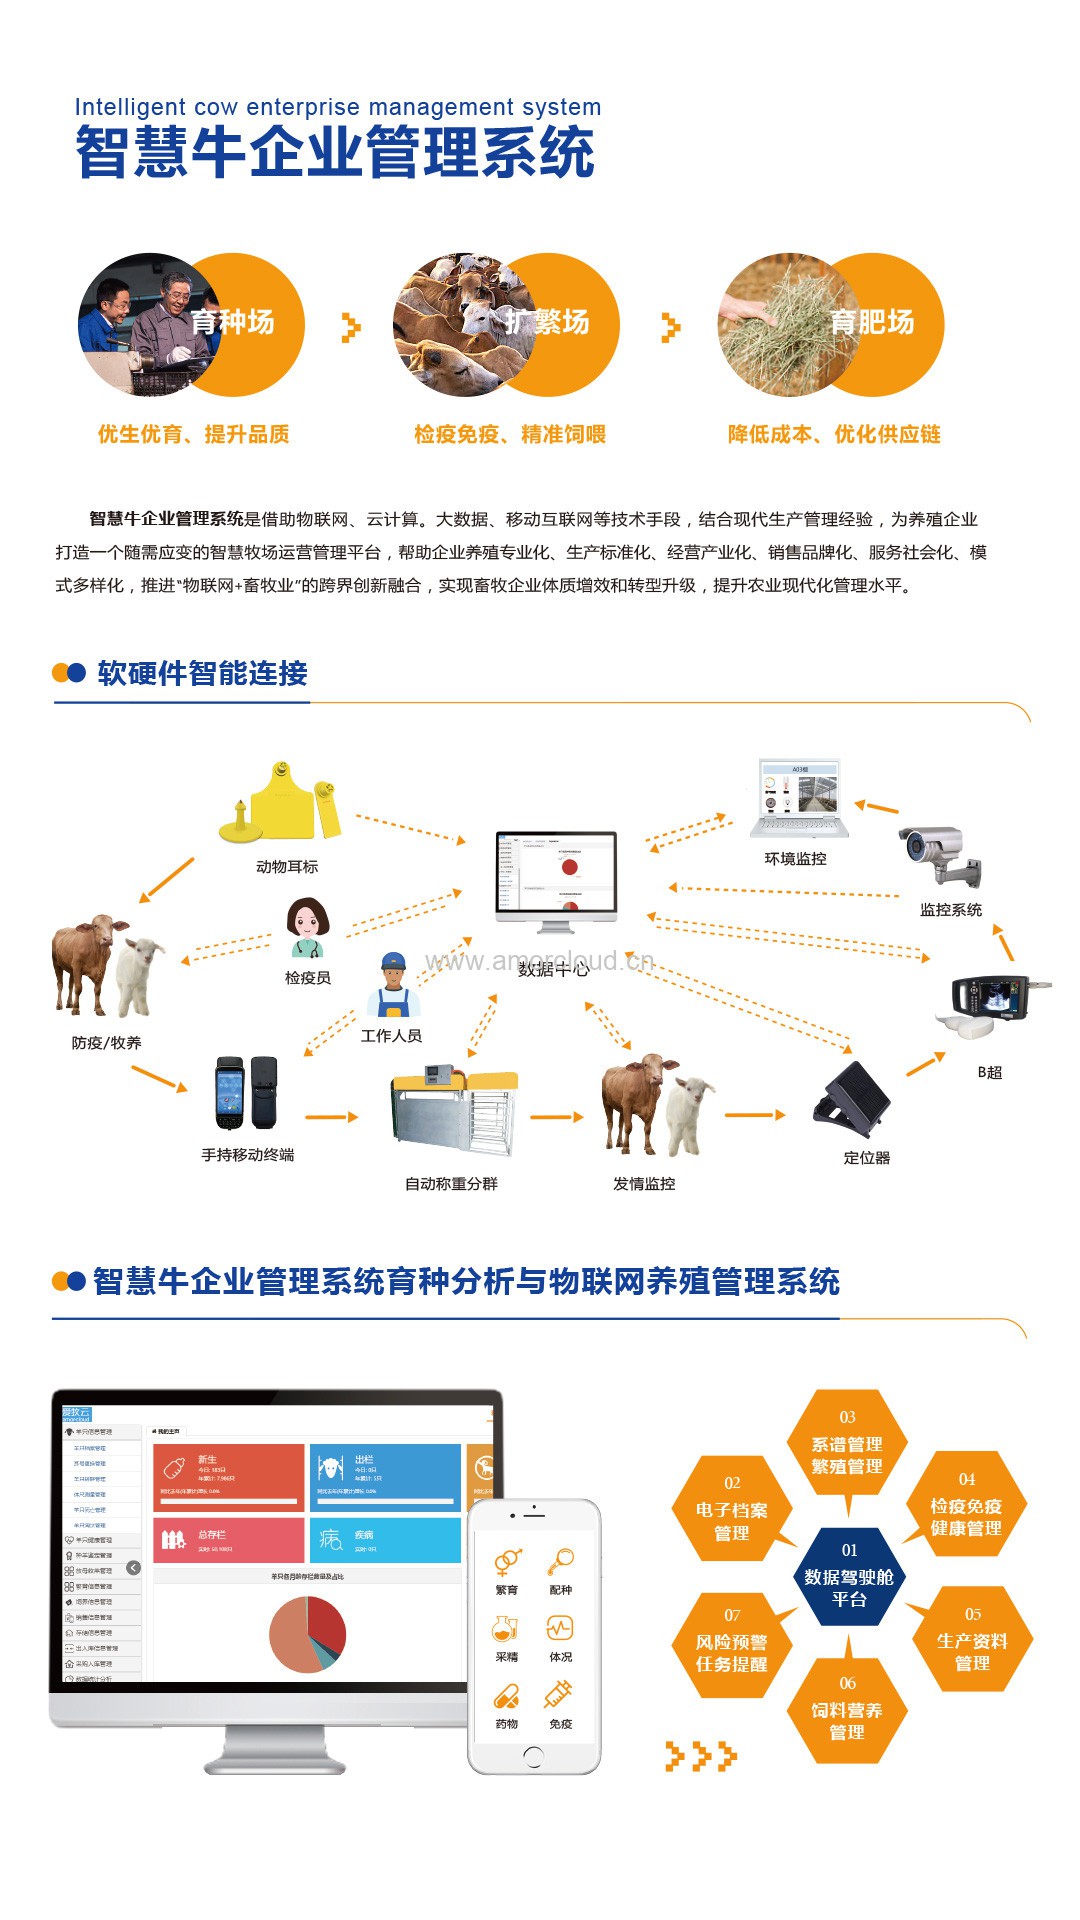 北京大爱农牧信息技术有限公司